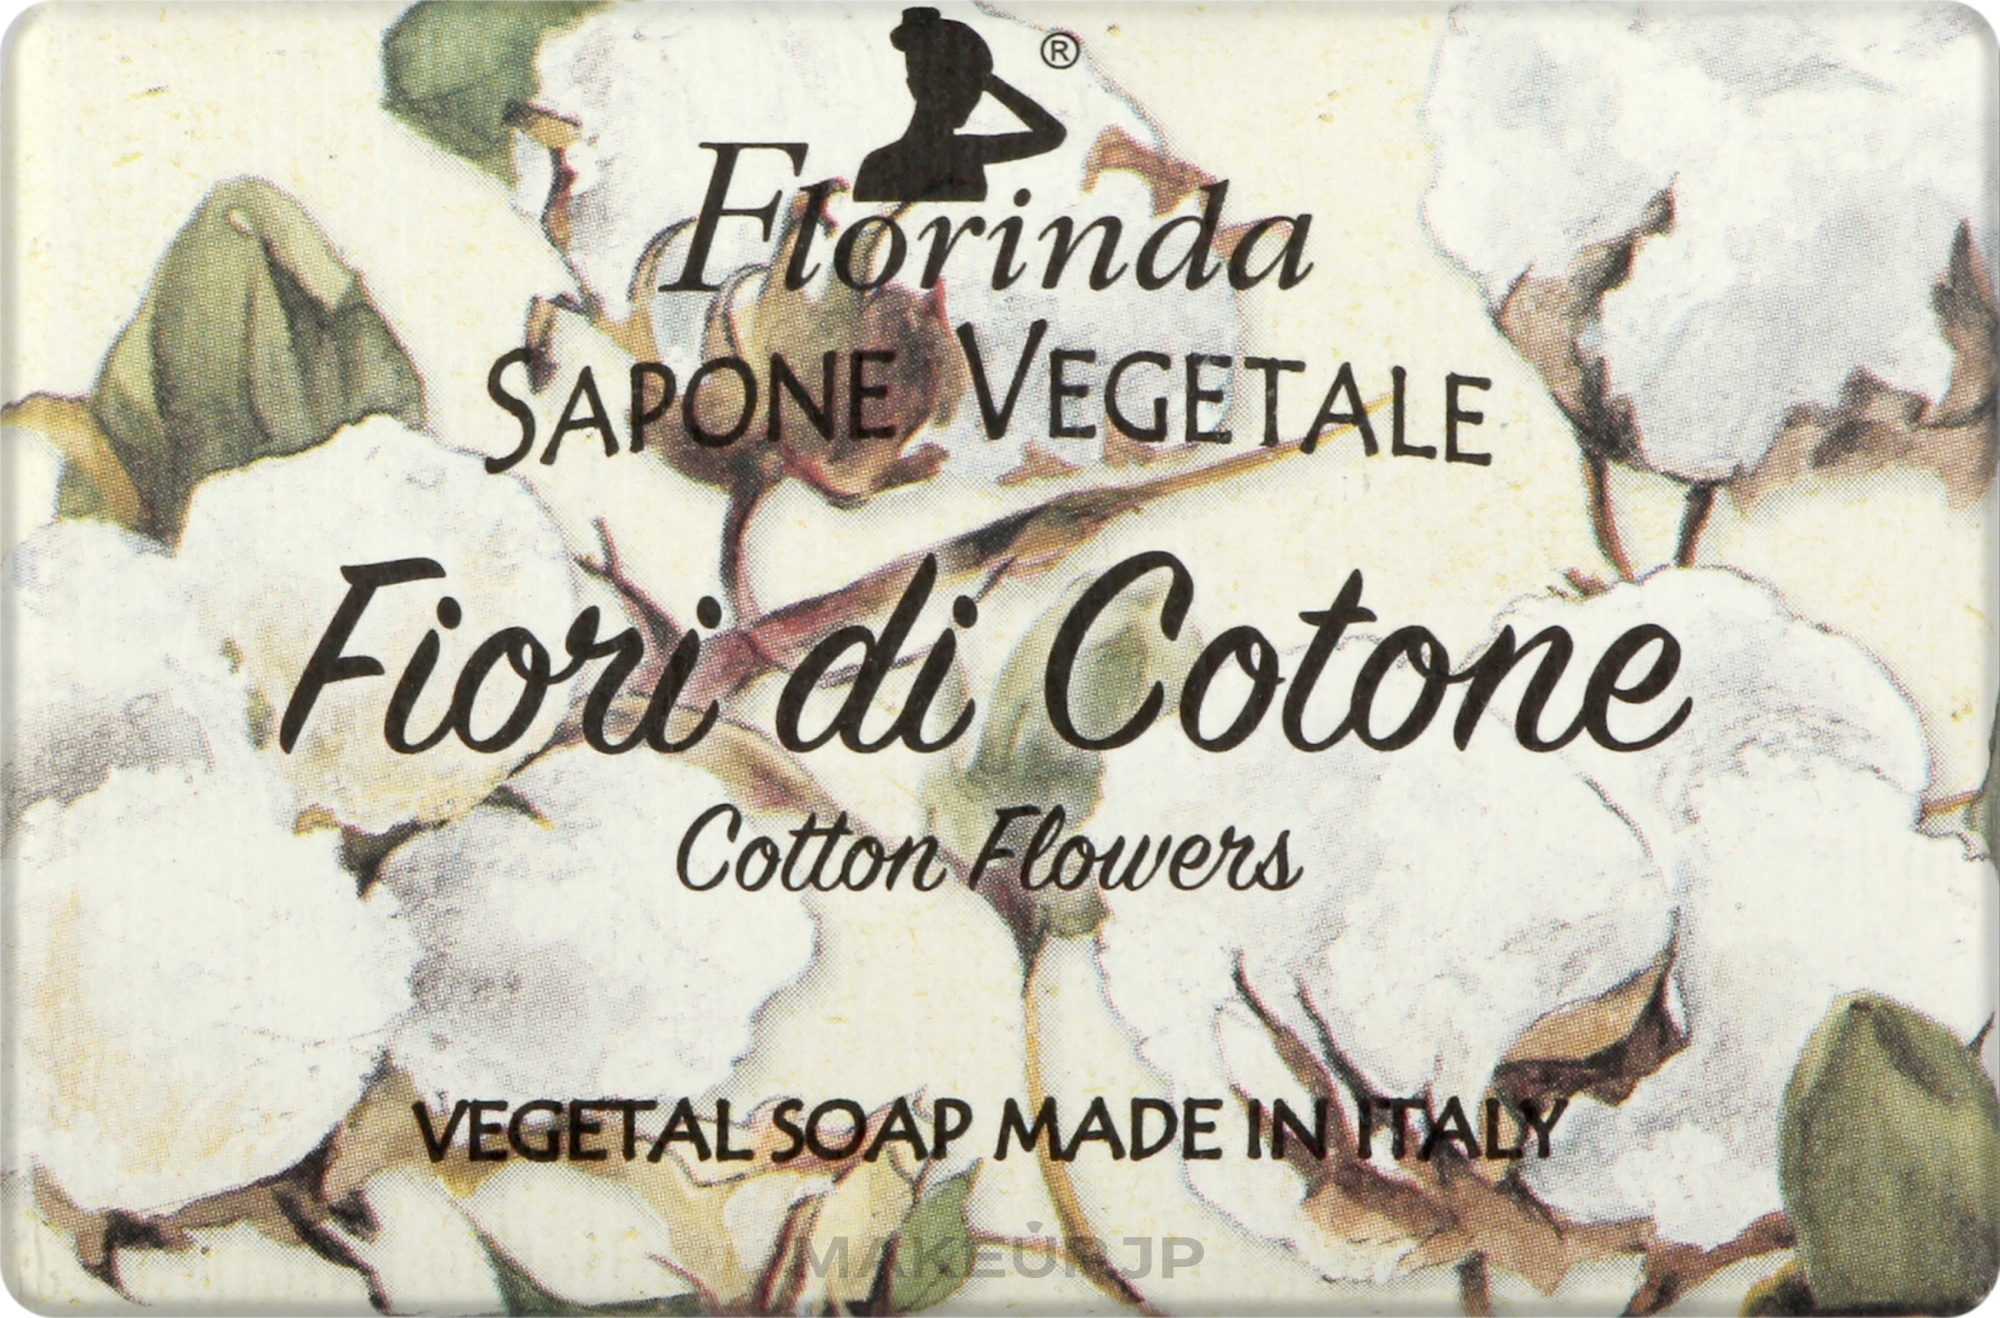 Cotton Flowers Natural Soap - Florinda Magic Of Flowers Cotton Flowers Vegetal Soap — photo 100 g